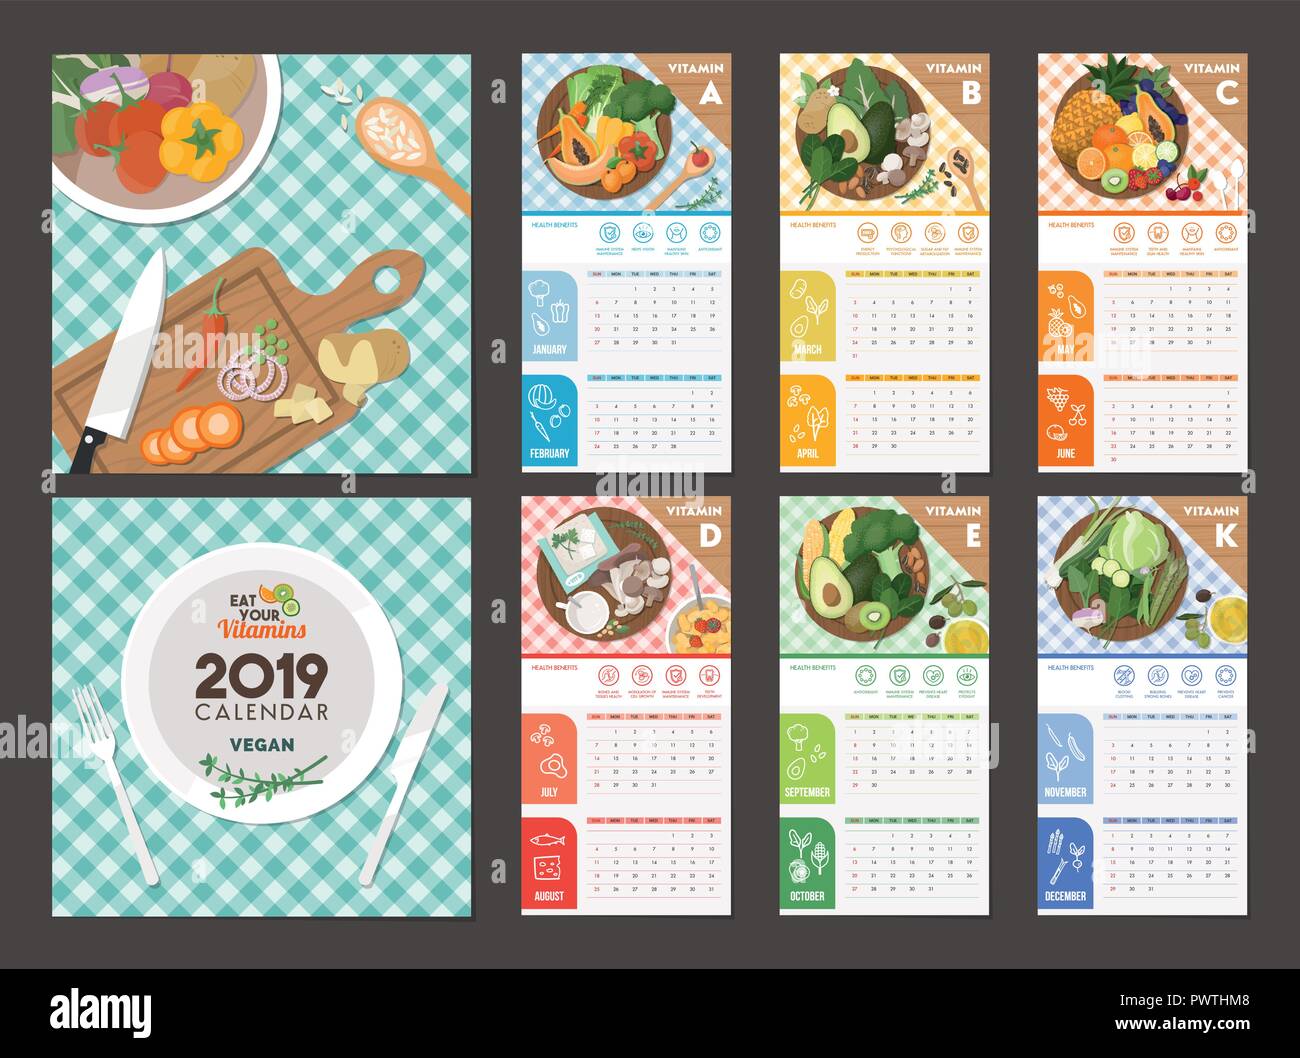 Vegan fuentes de vitaminas y alimentación saludable, Calendario 2019 Ilustración del Vector